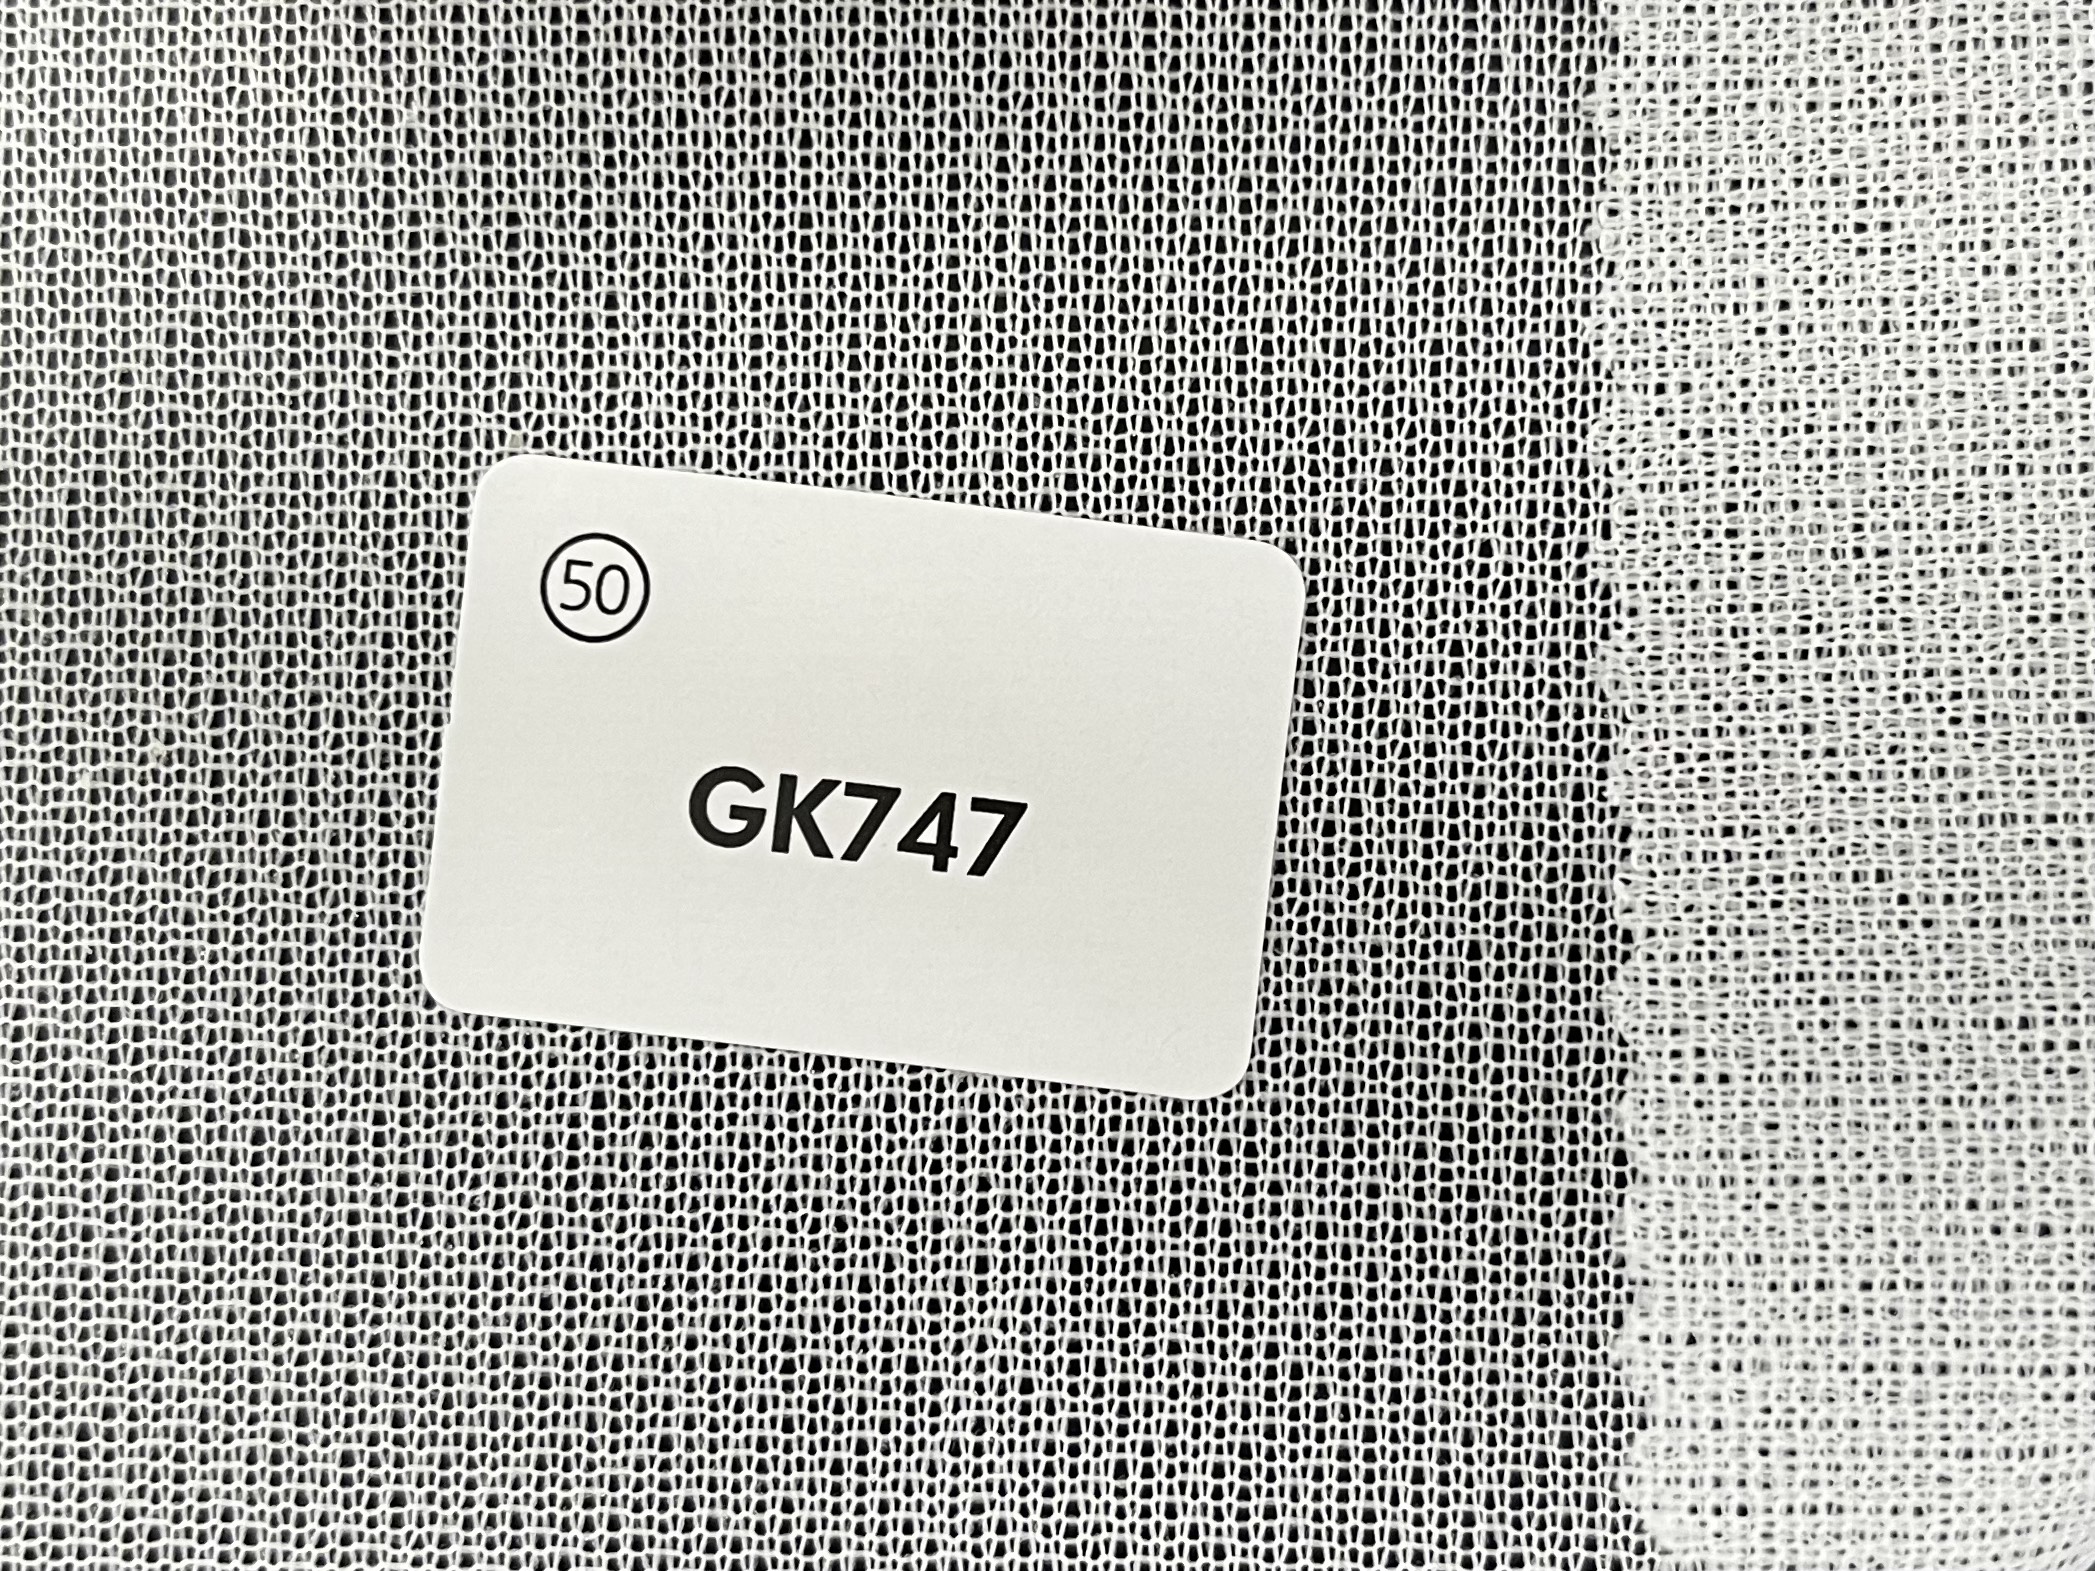 GK747